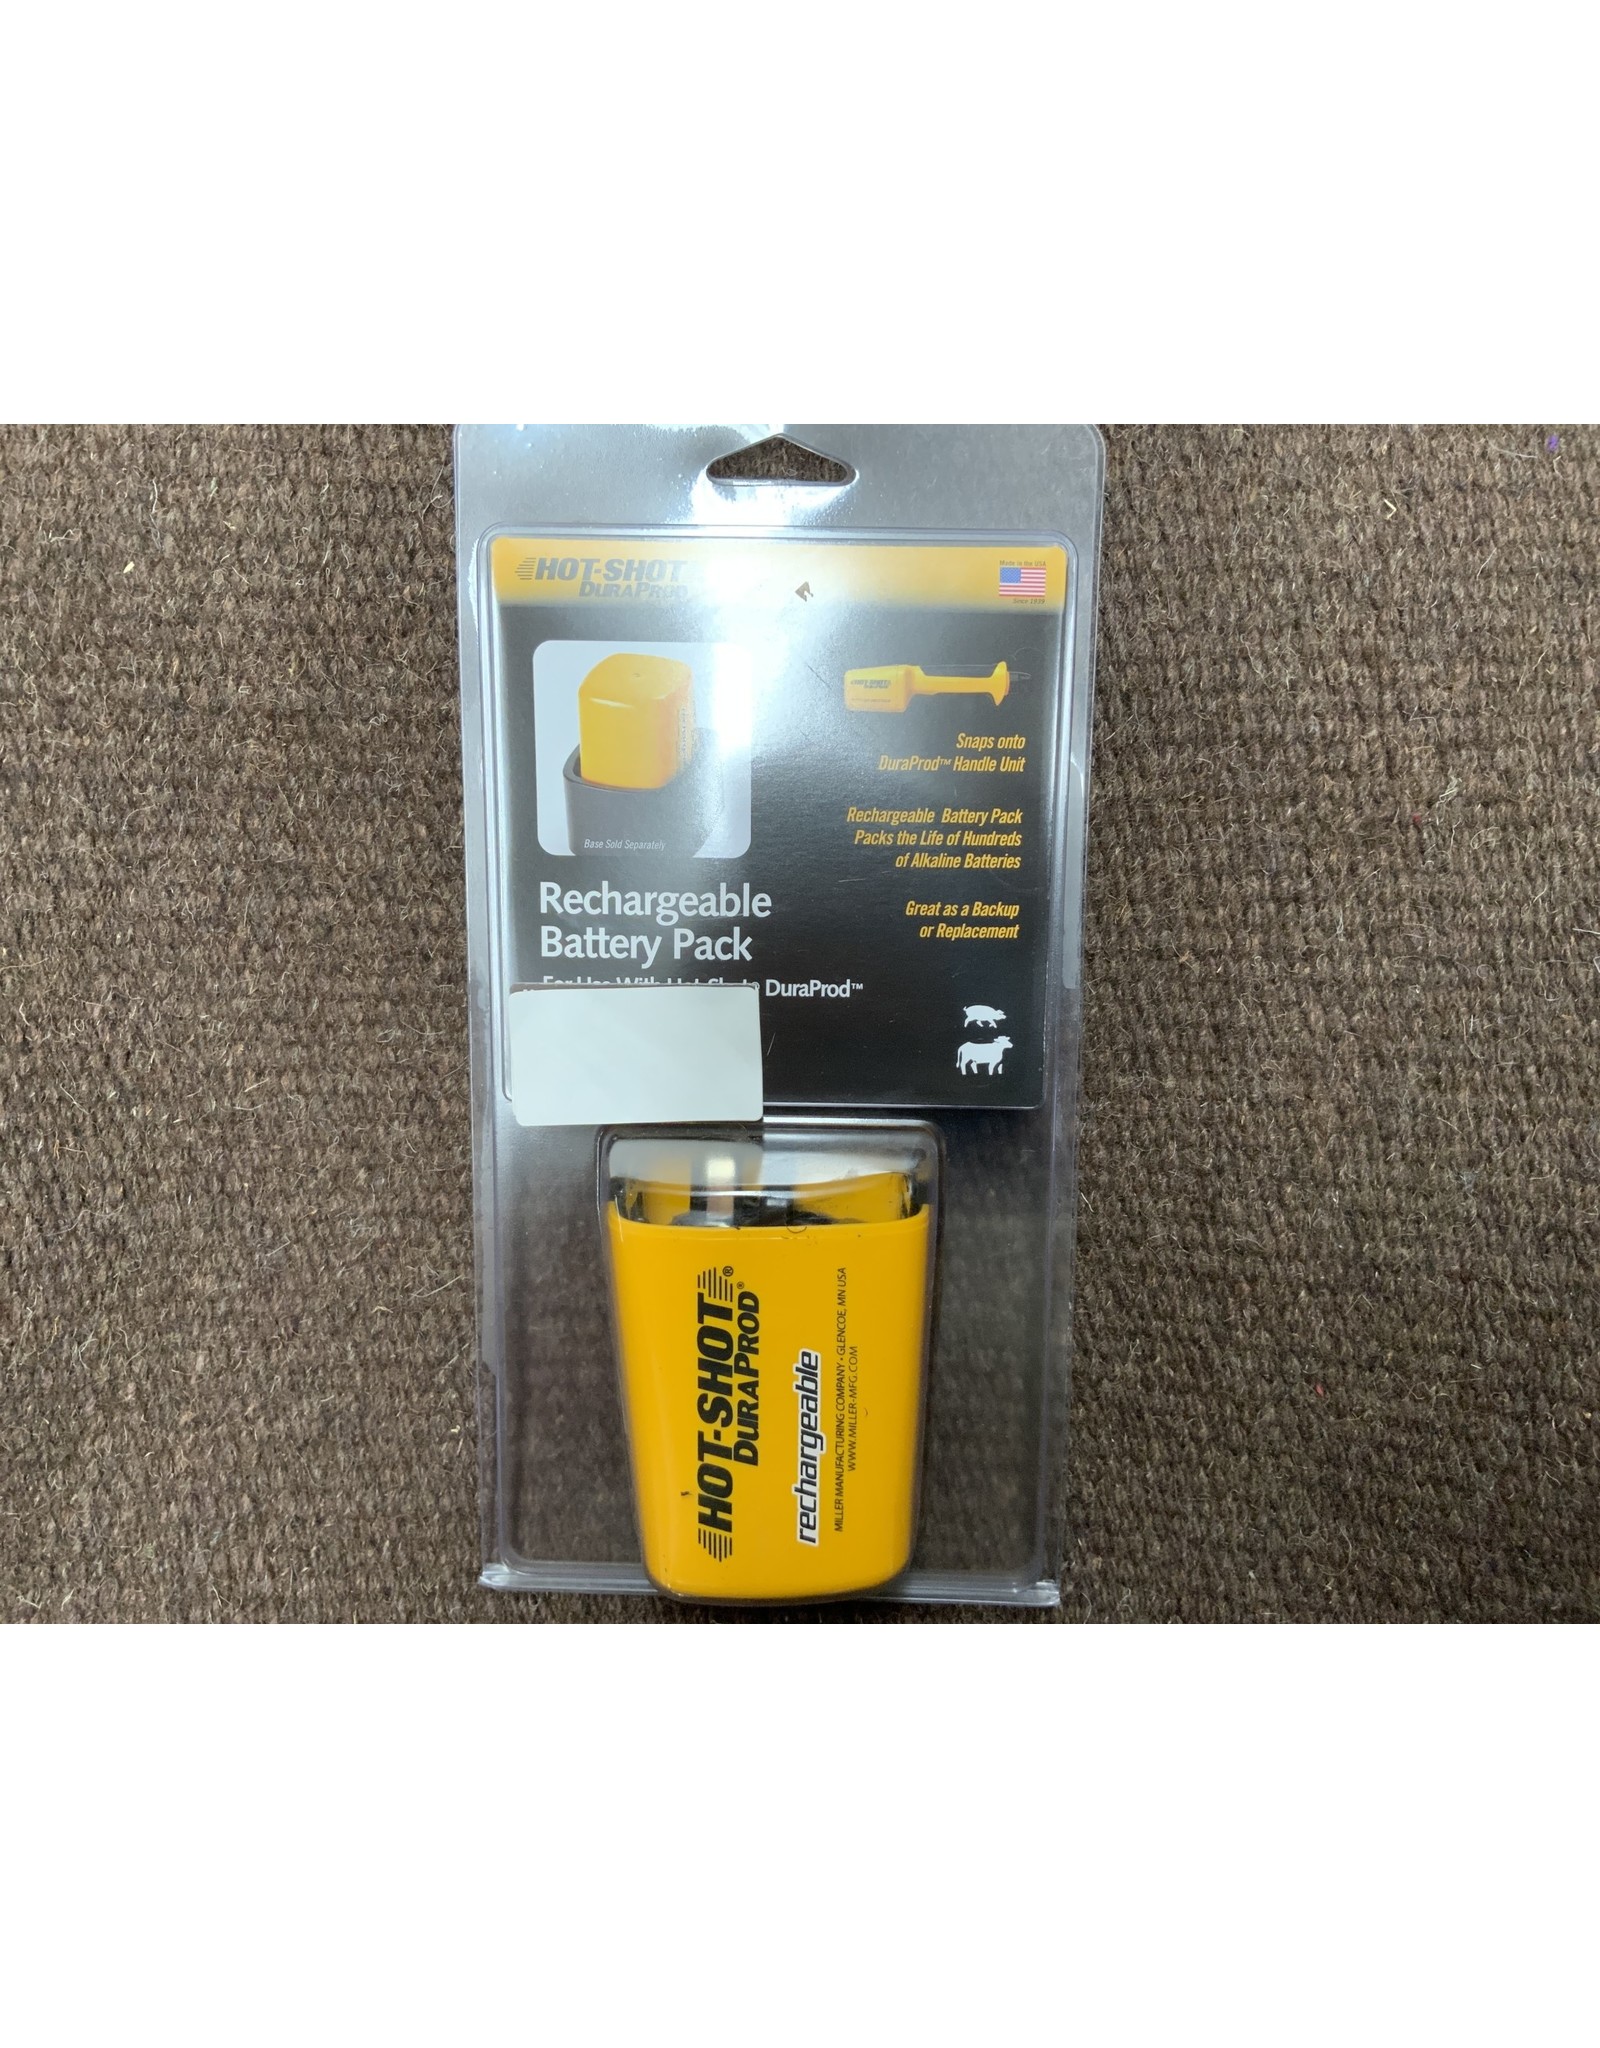 Hot Shot - Dura Prod Rechargeable Battery Pack DXRBP 054-413